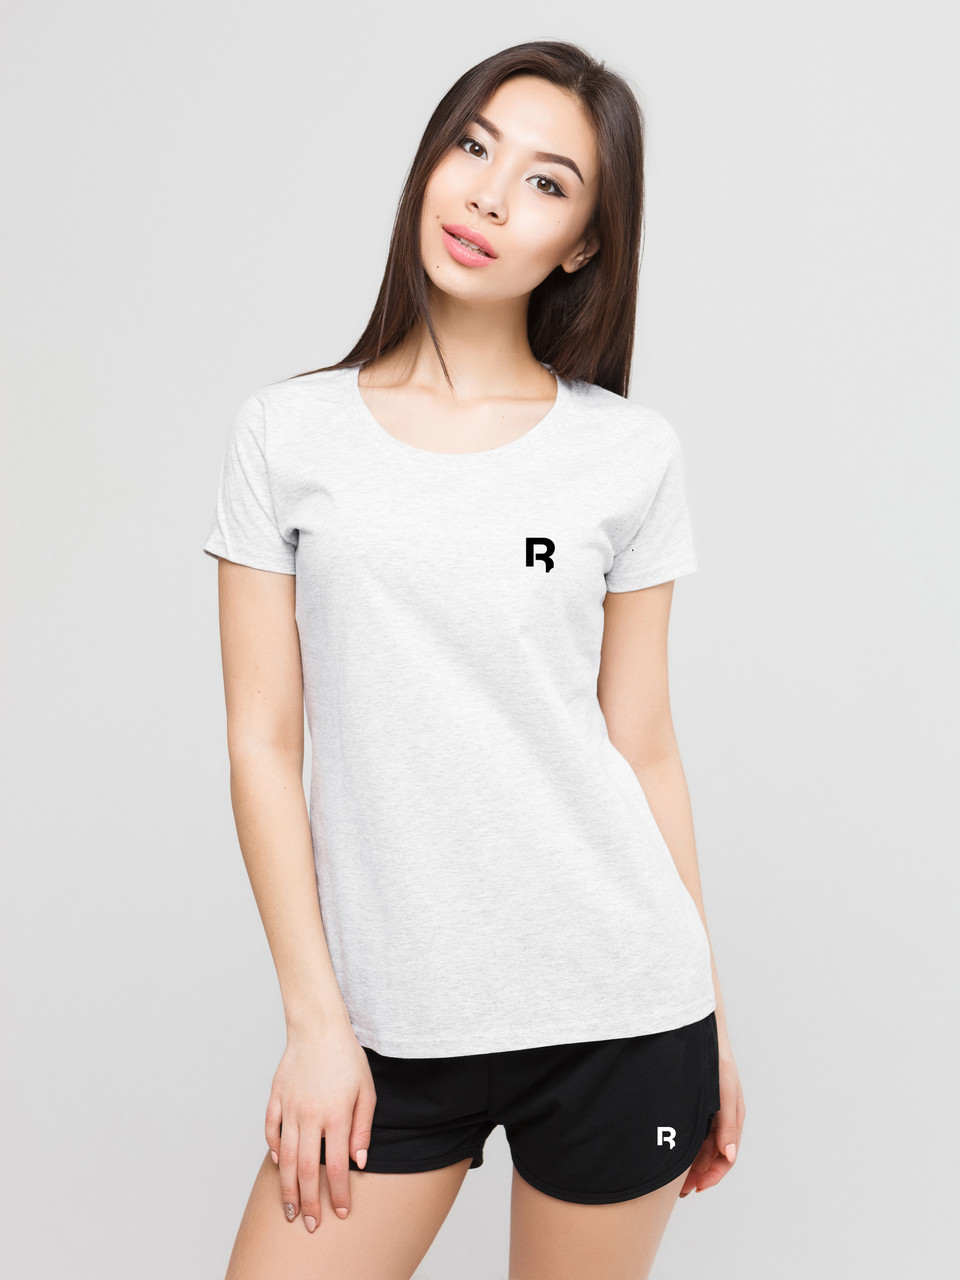 Жіночий комплект Reebok R футболка + шорти, рибок